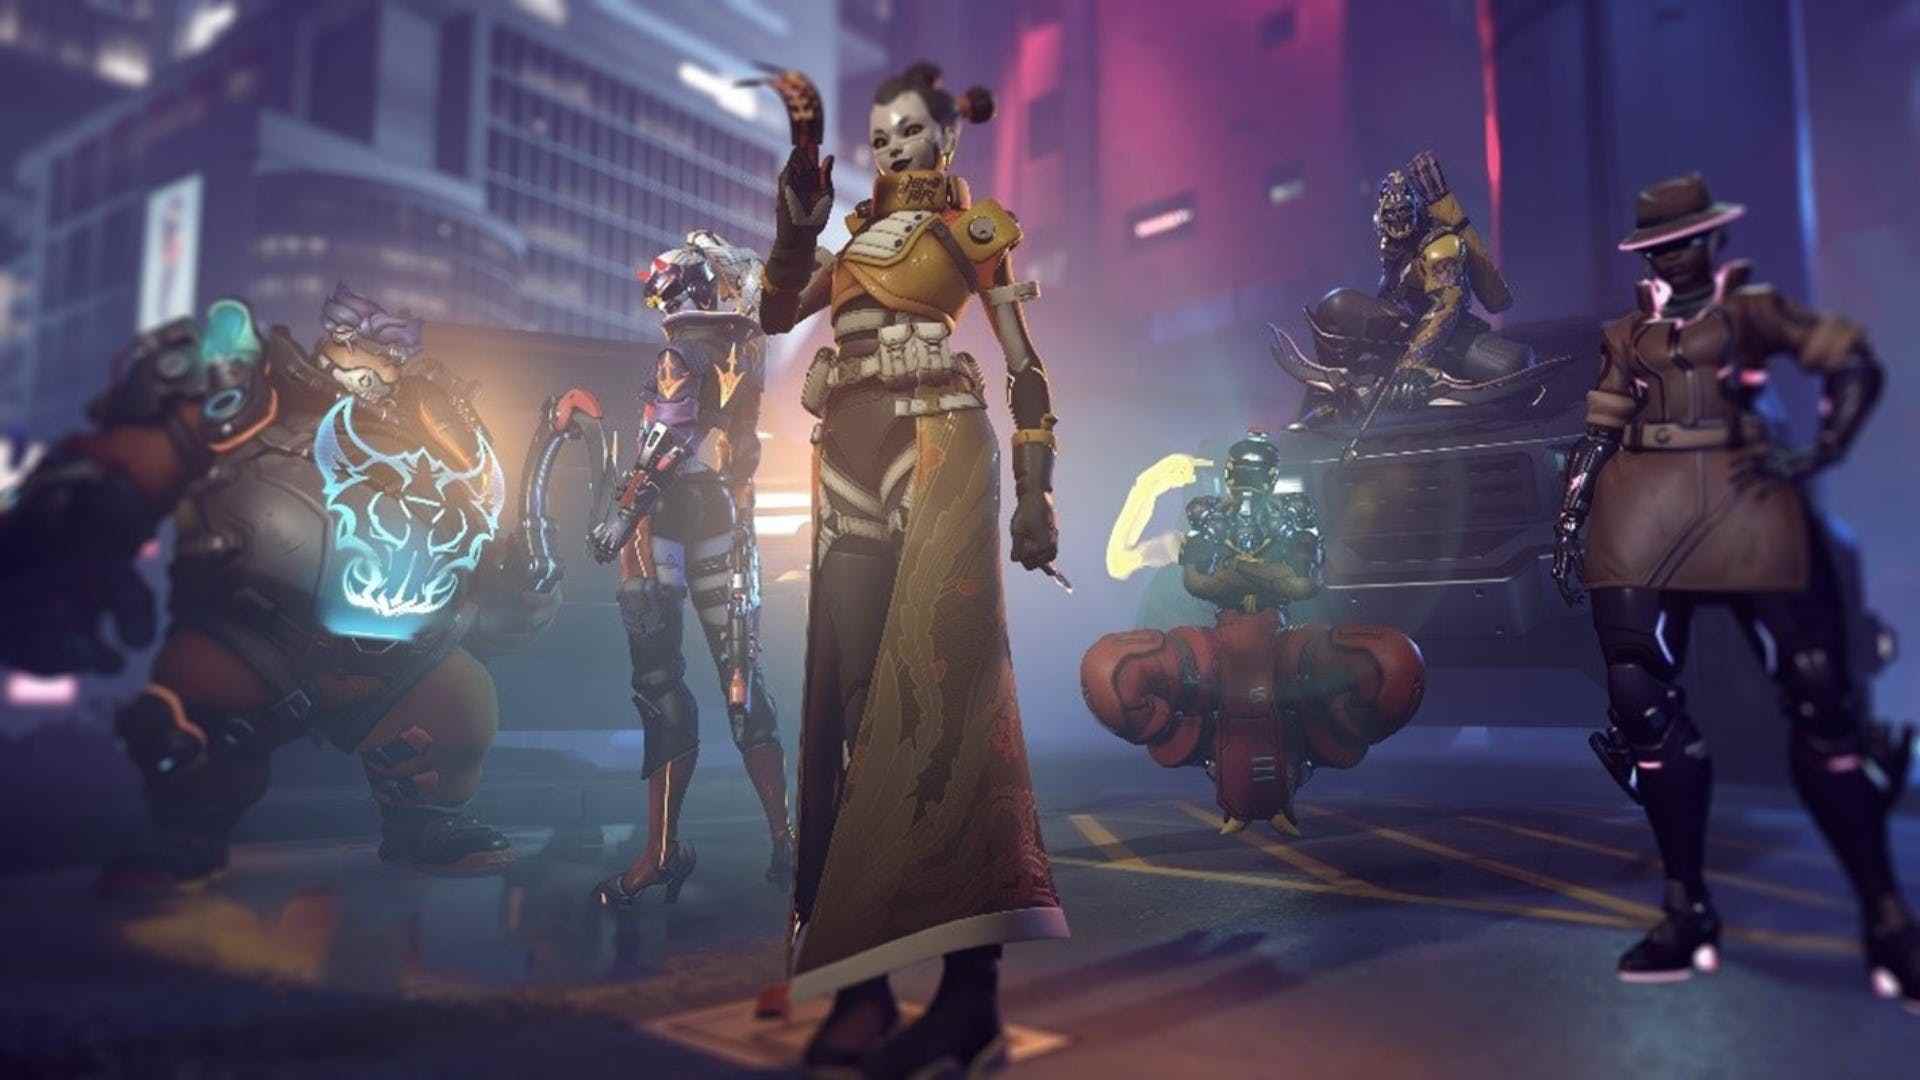 Overwatch 2'den, fütüristik siberpunk kıyafetleriyle donatılmış birkaç Overwatch kahramanının yer aldığı, Sezon 1'in siberpunk temasını vurgulayan ekran görüntüsü